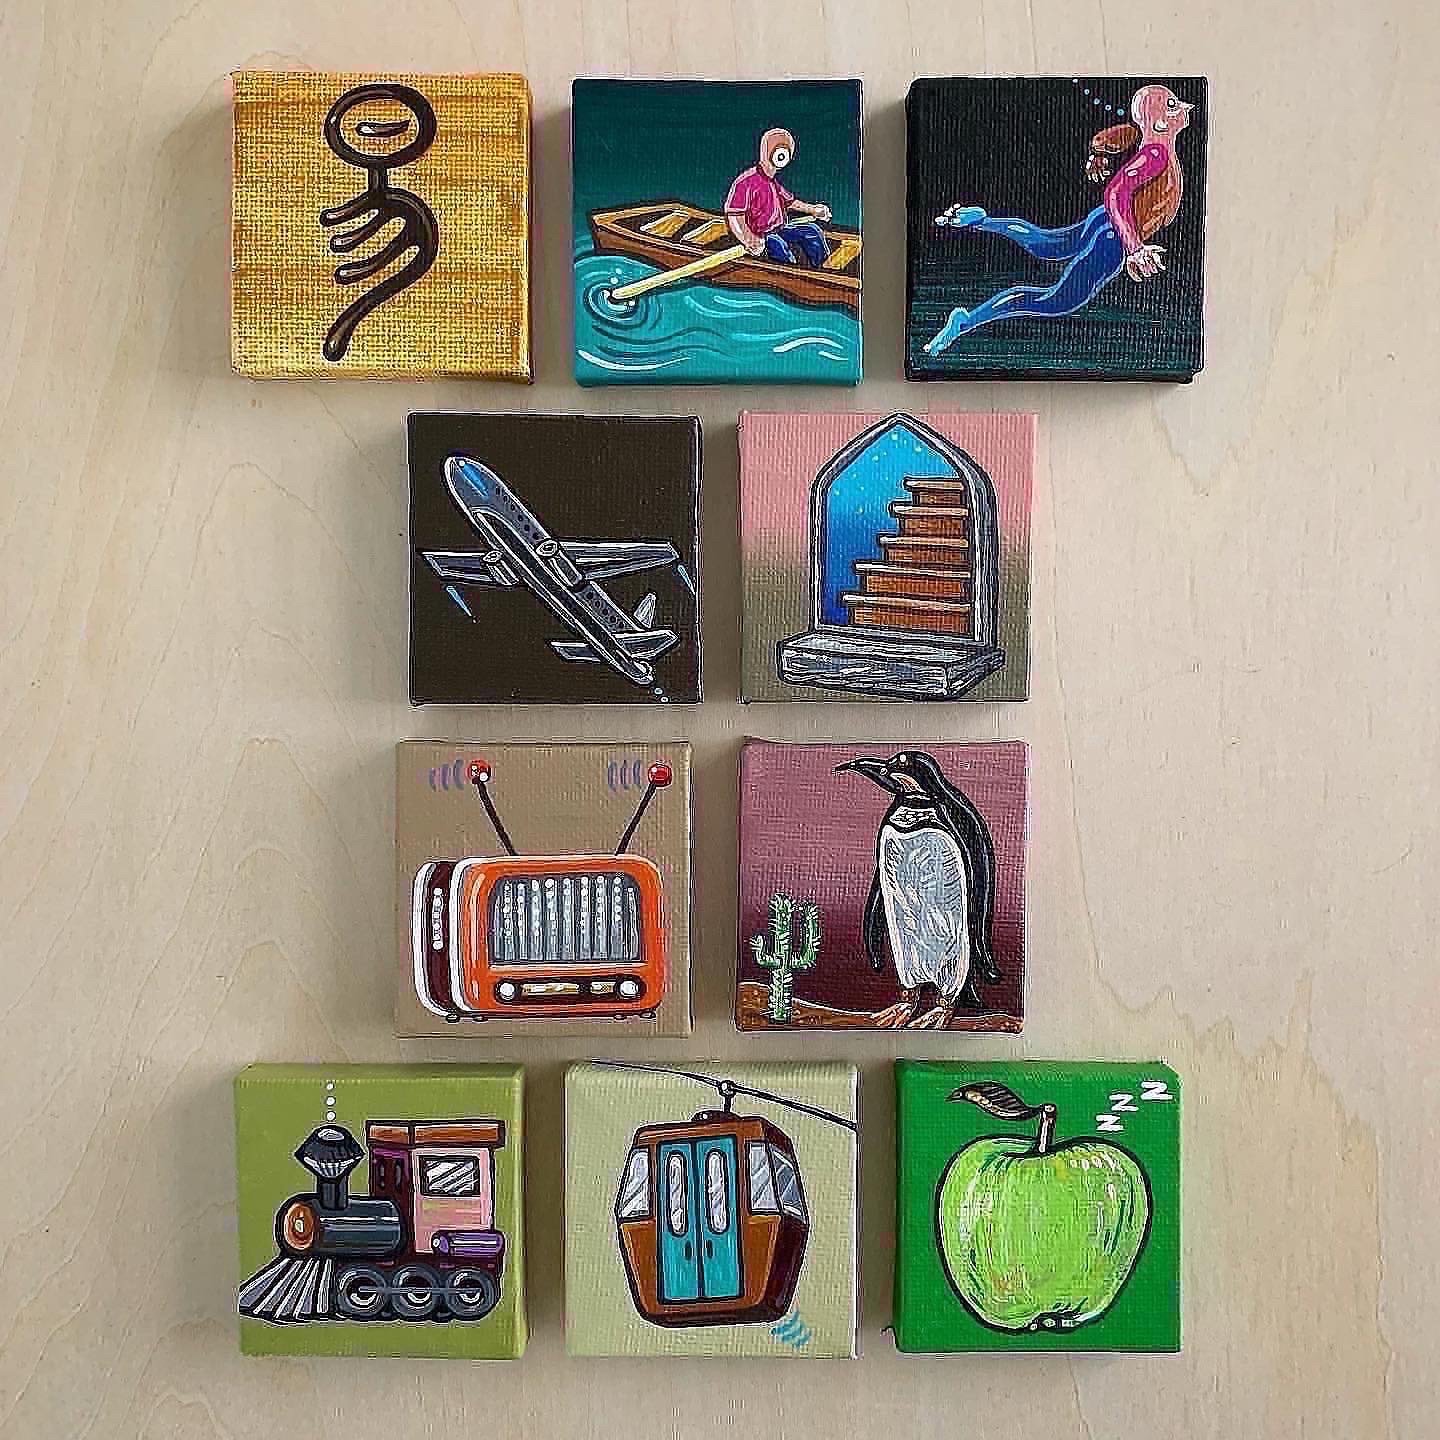 Box set (dredg album collection of mini paintings) Drew Roulette